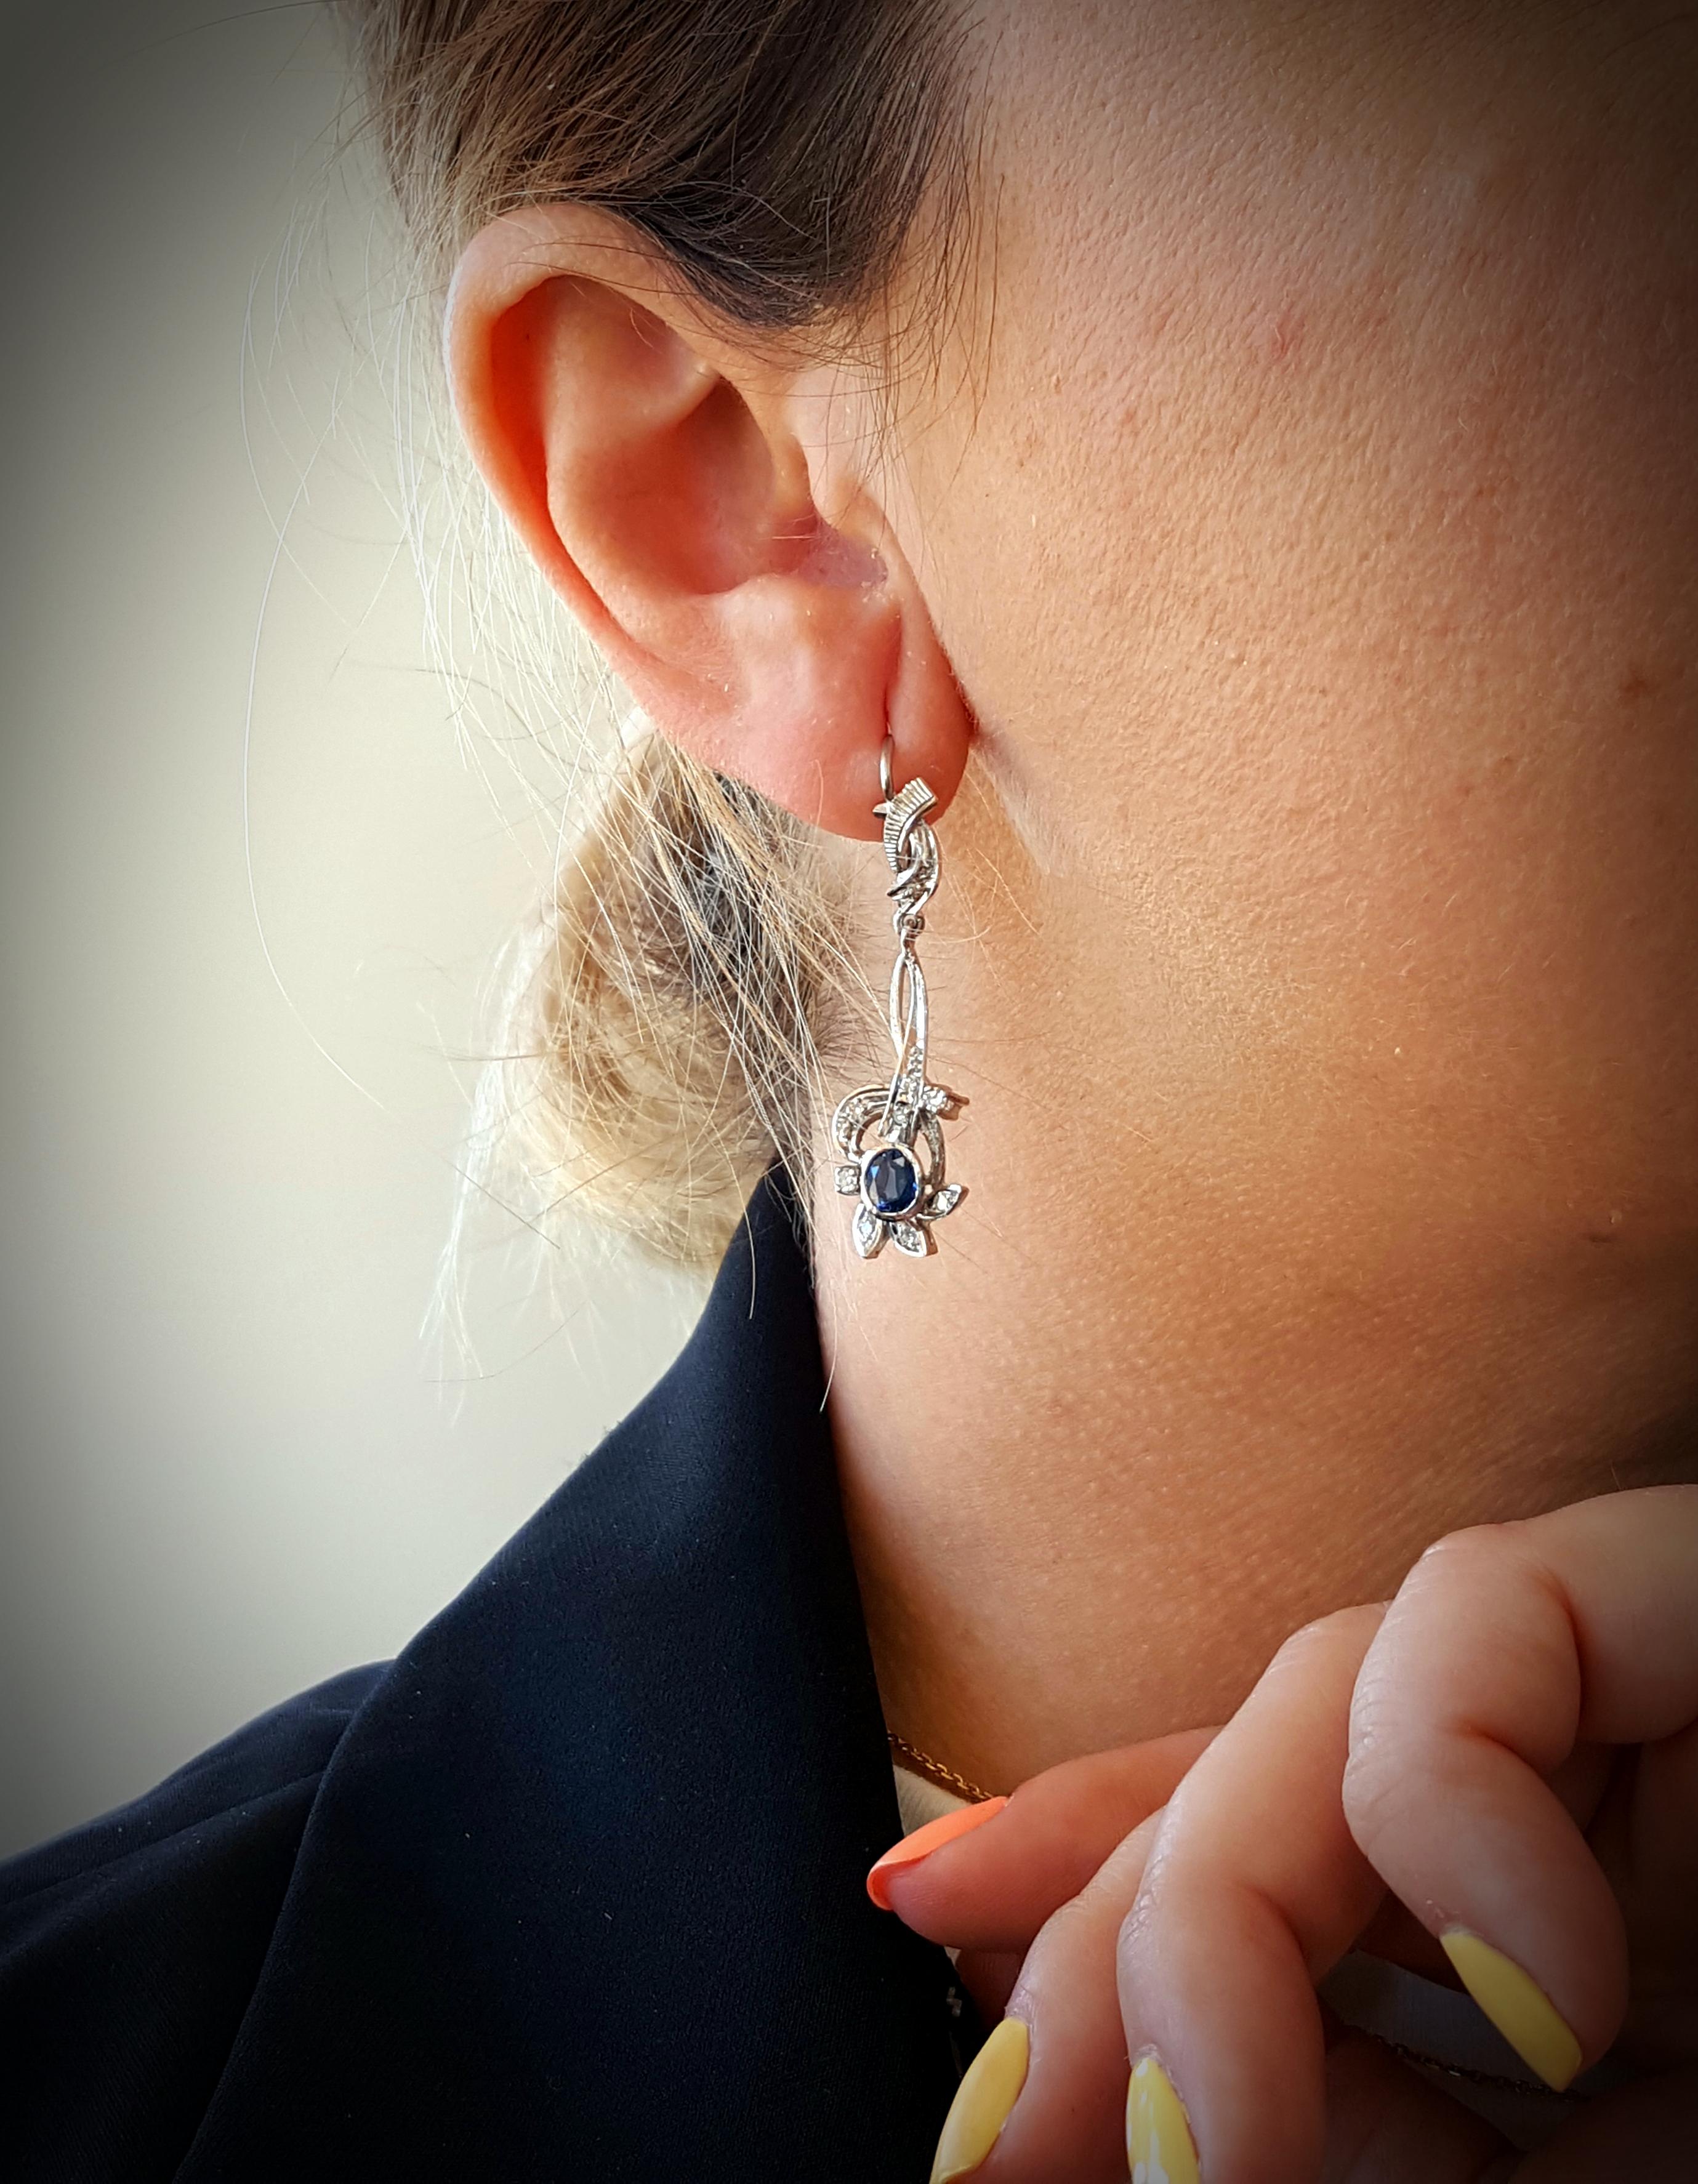 Estate 14 Karat Weißgold Blau Saphir und Diamant Leverback Ohrringe.  Die Ohrringe bestehen aus einem Paar wunderschön aufeinander abgestimmter ovaler blauer Saphire.  Die Steine sind jeweils in eine Lünette aus 14-karätigem Weißgold gefasst, die